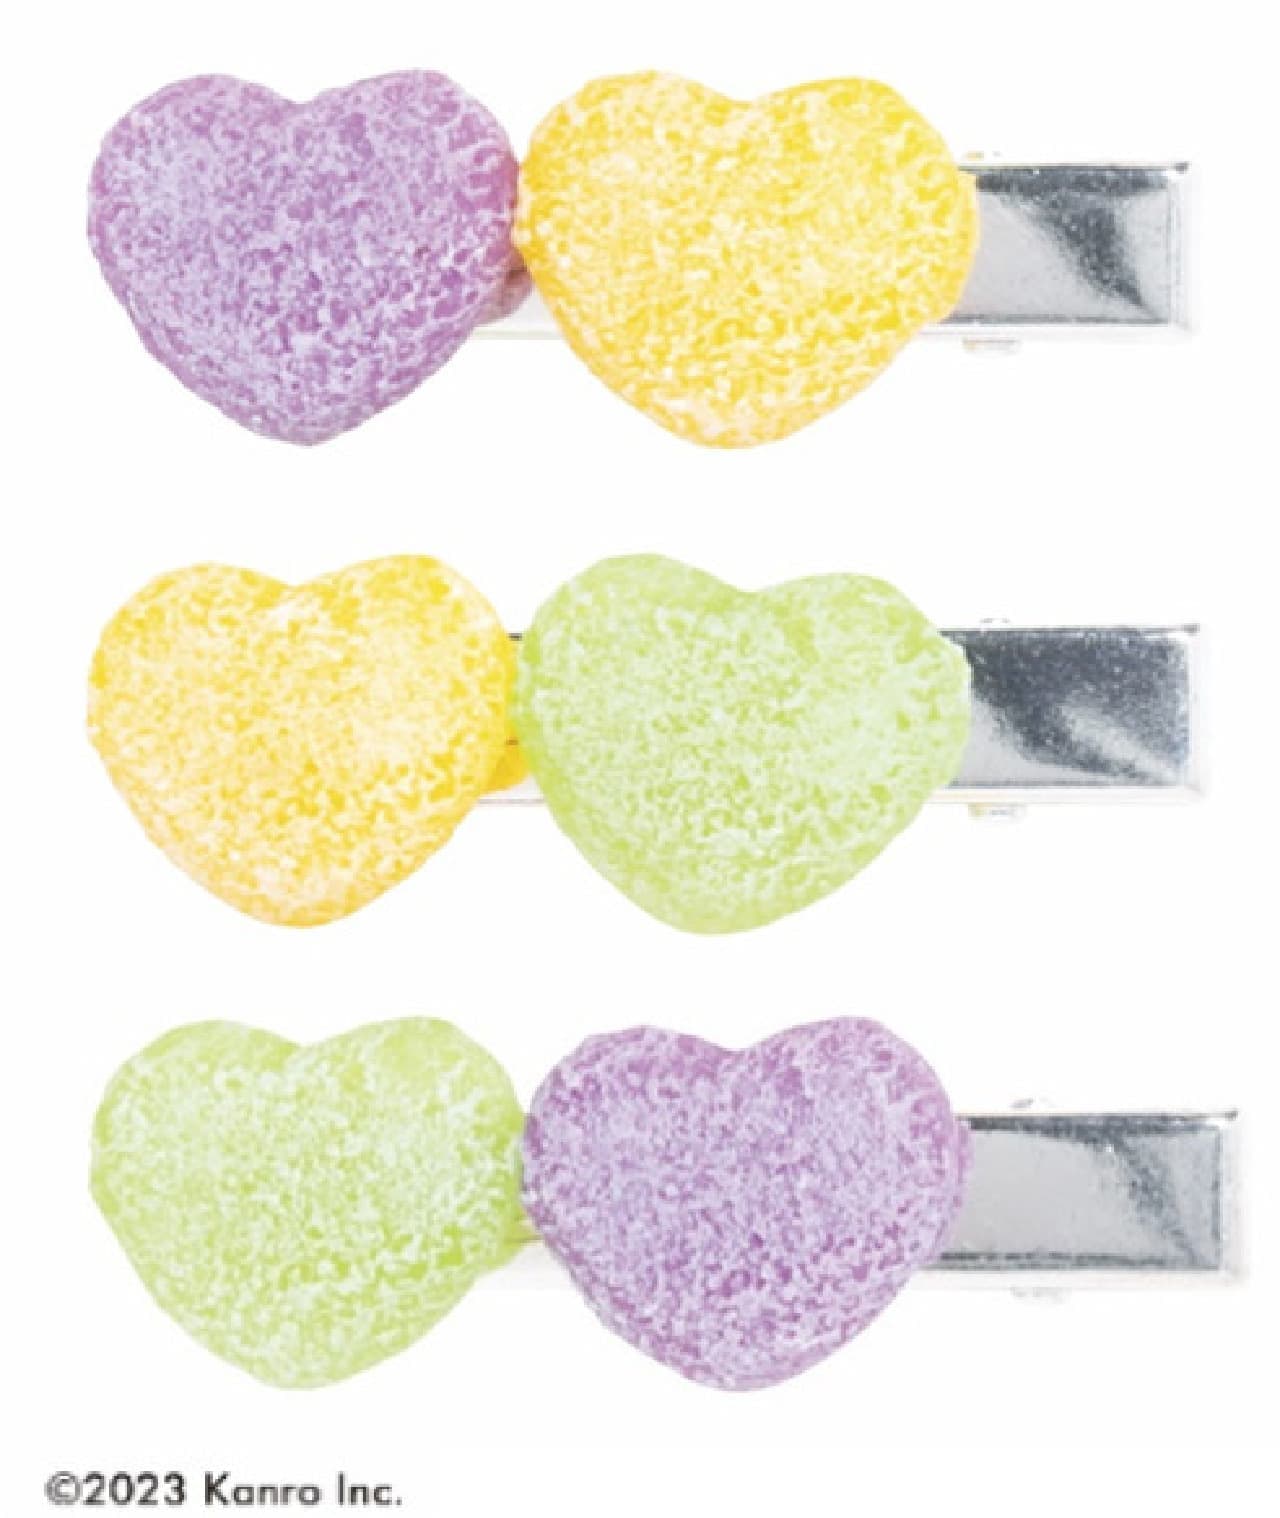 Pure Gummi Hair Pins (3 types)